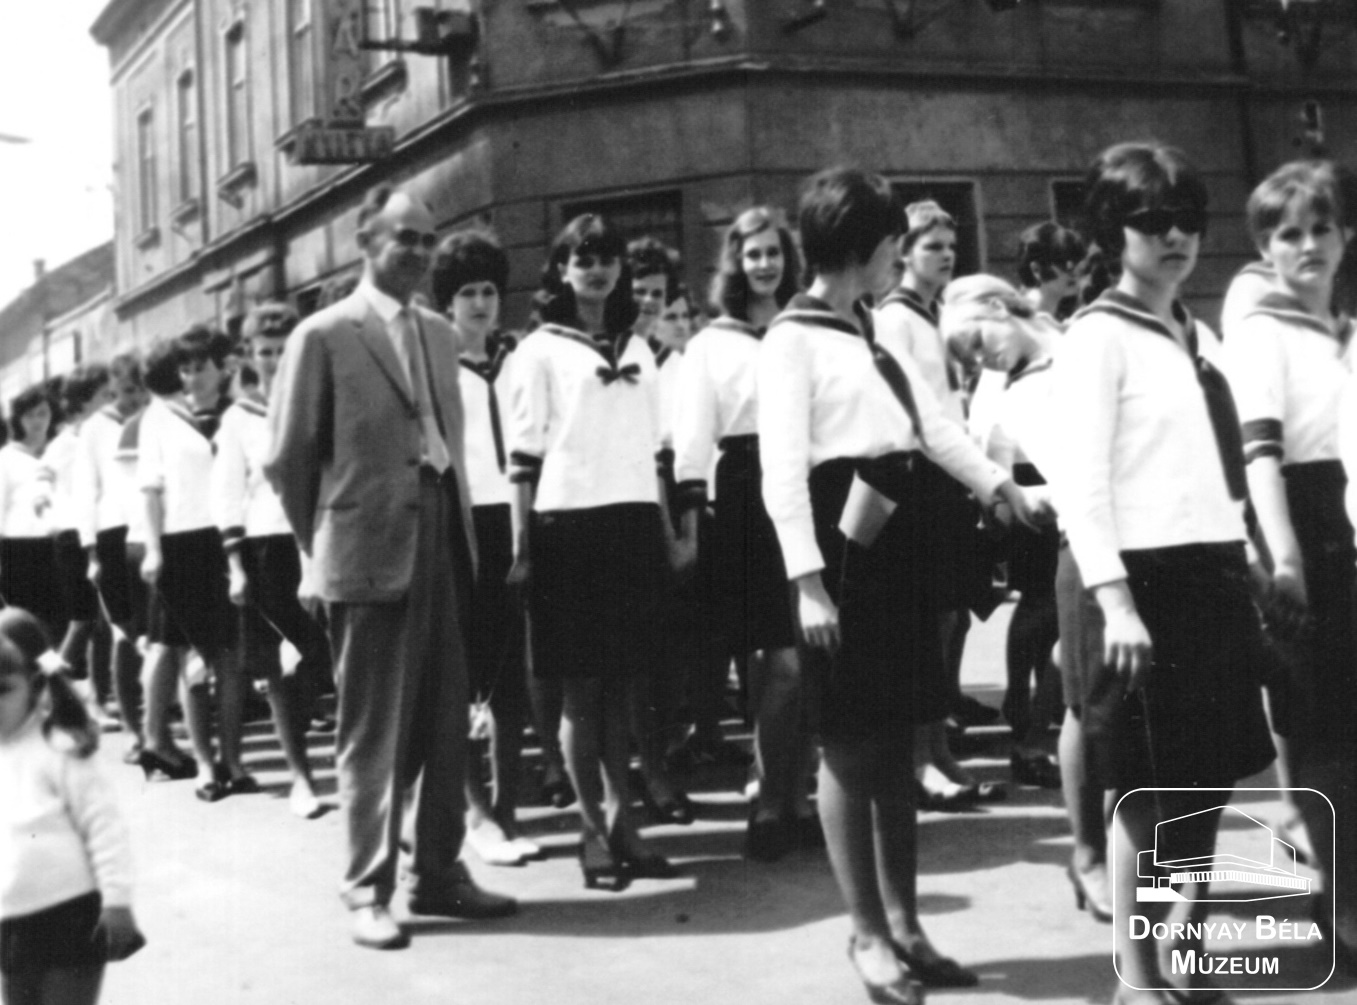 Salgótarján, 1965. Május 1. Közgazdasági szakközépiskola diákjai (Dornyay Béla Múzeum, Salgótarján CC BY-NC-SA)